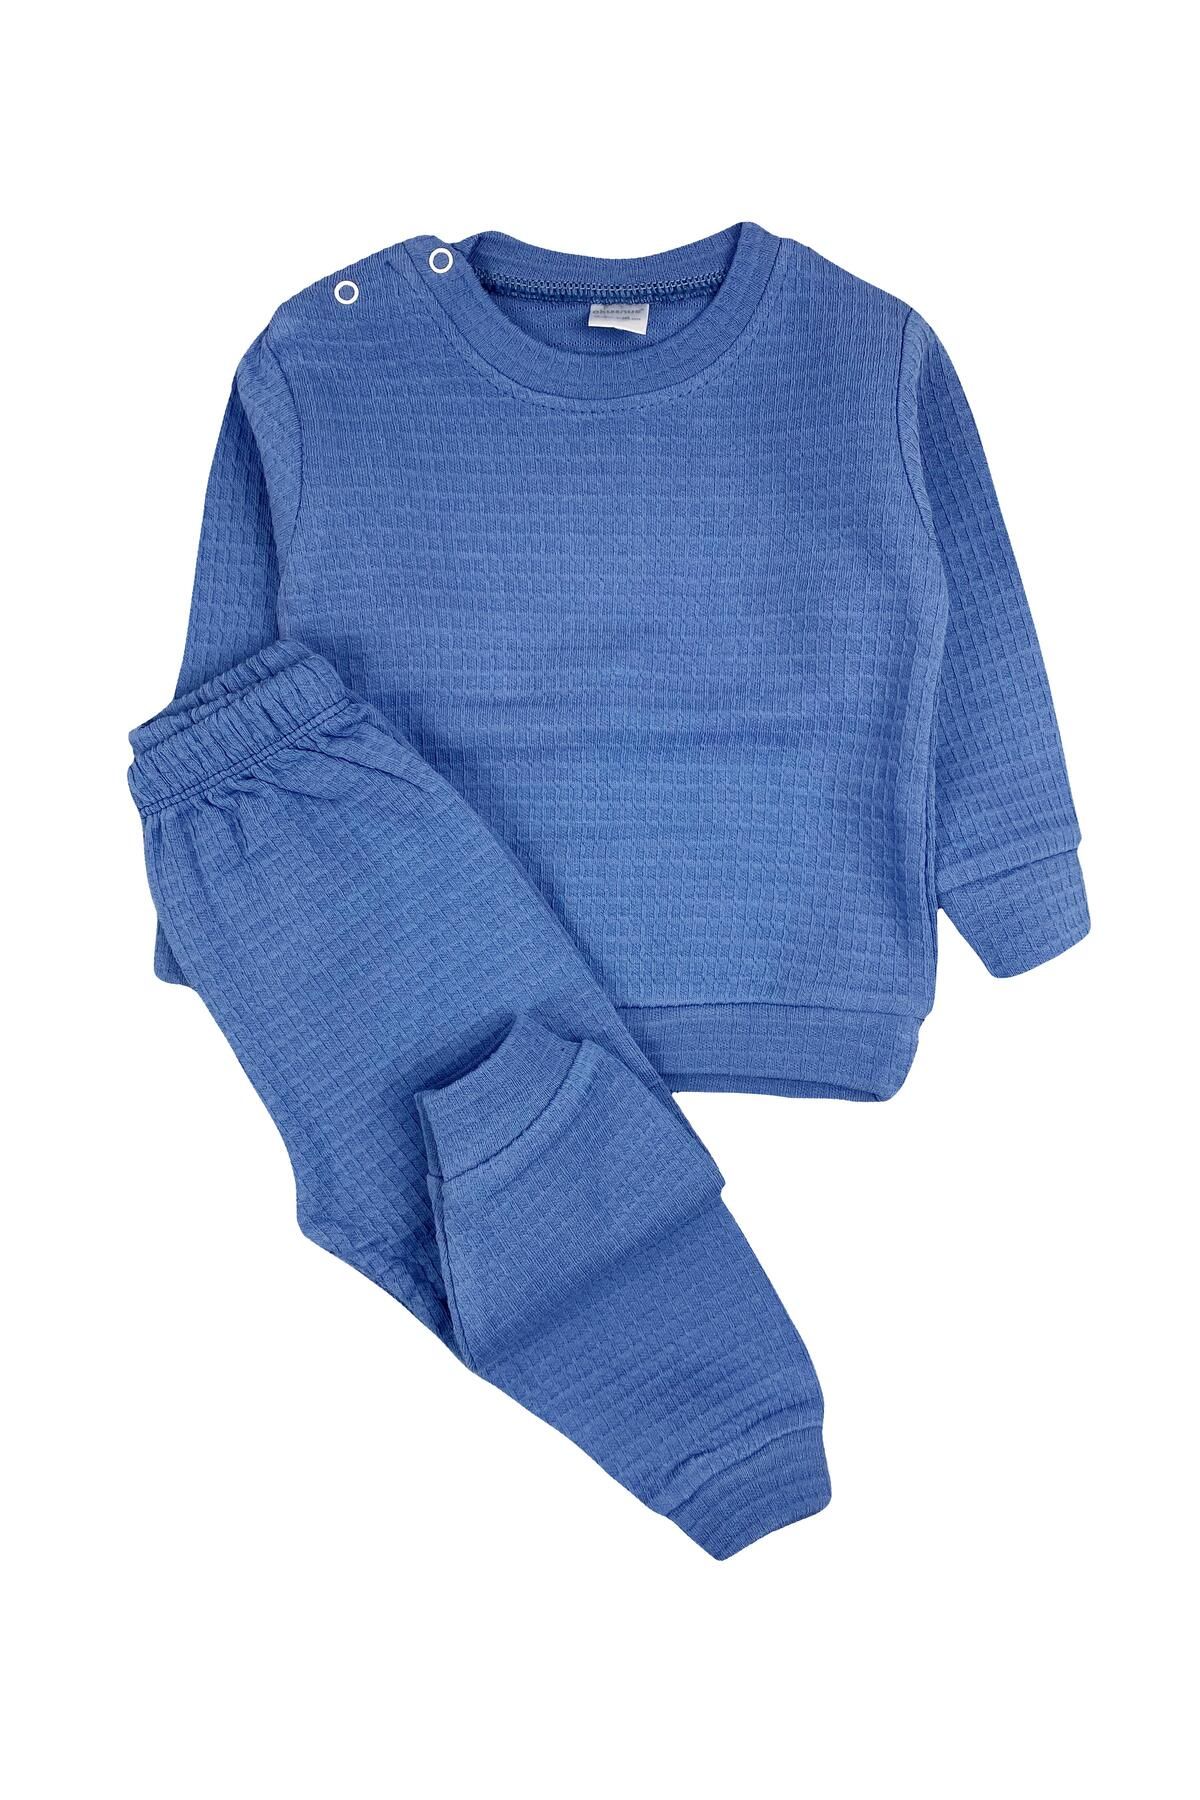 Mini Okyanus Bebe Penye Bebek Pijama Takımı Mavi